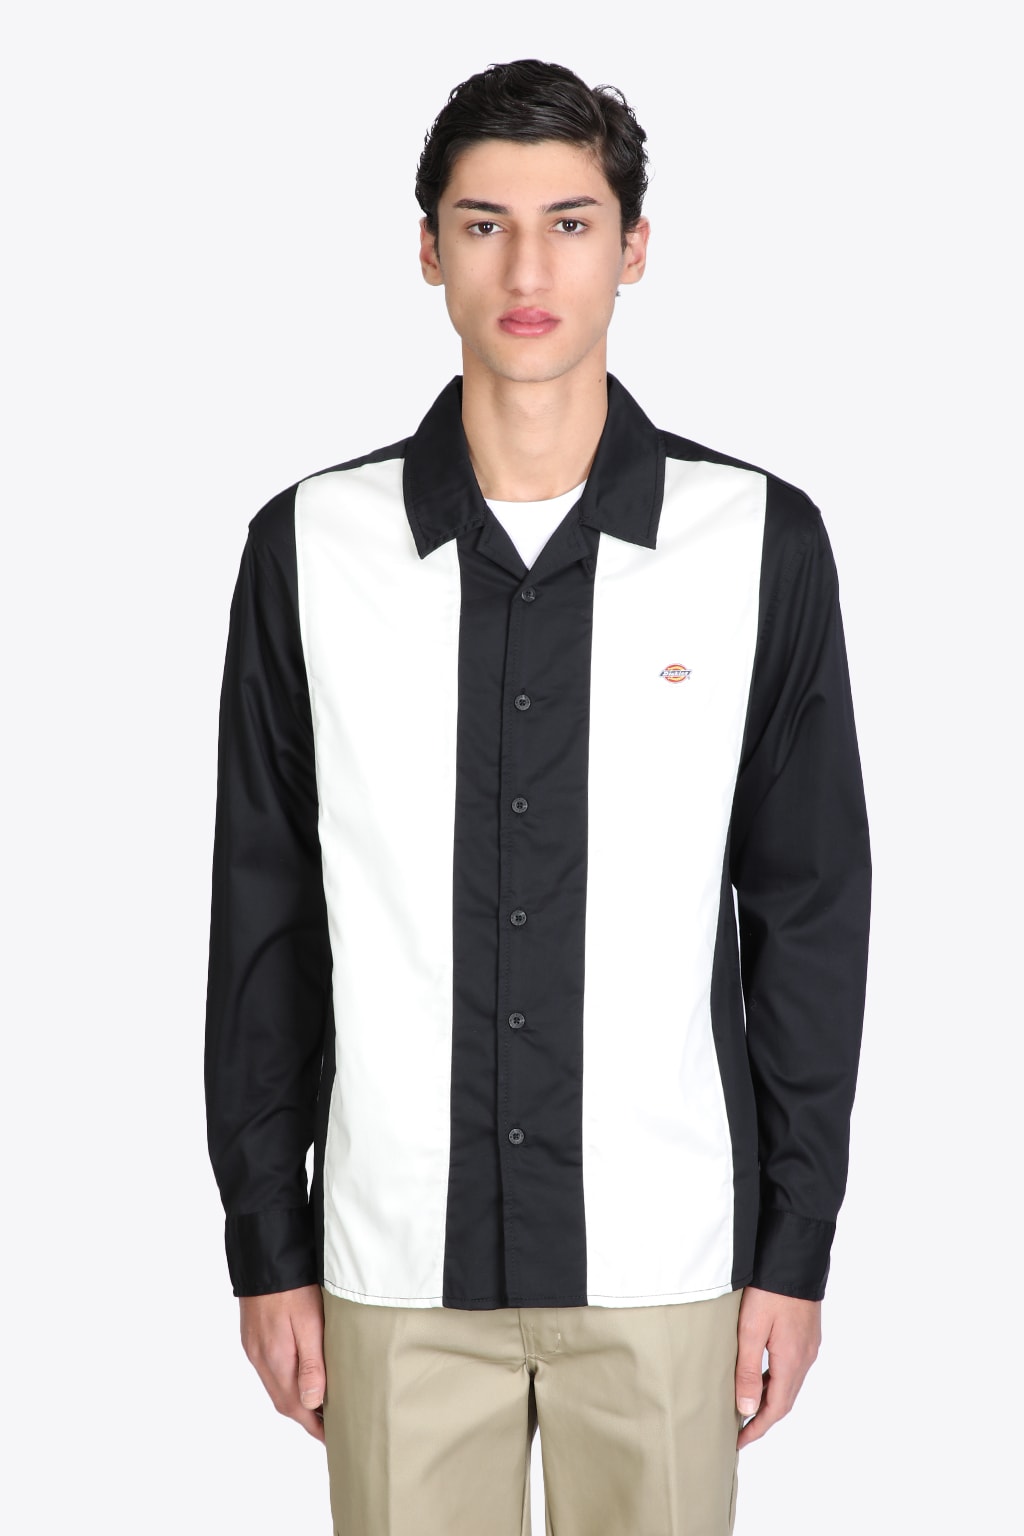 Dickies Westover Shirt Black and white paneled bowling shirt - Westover shirt